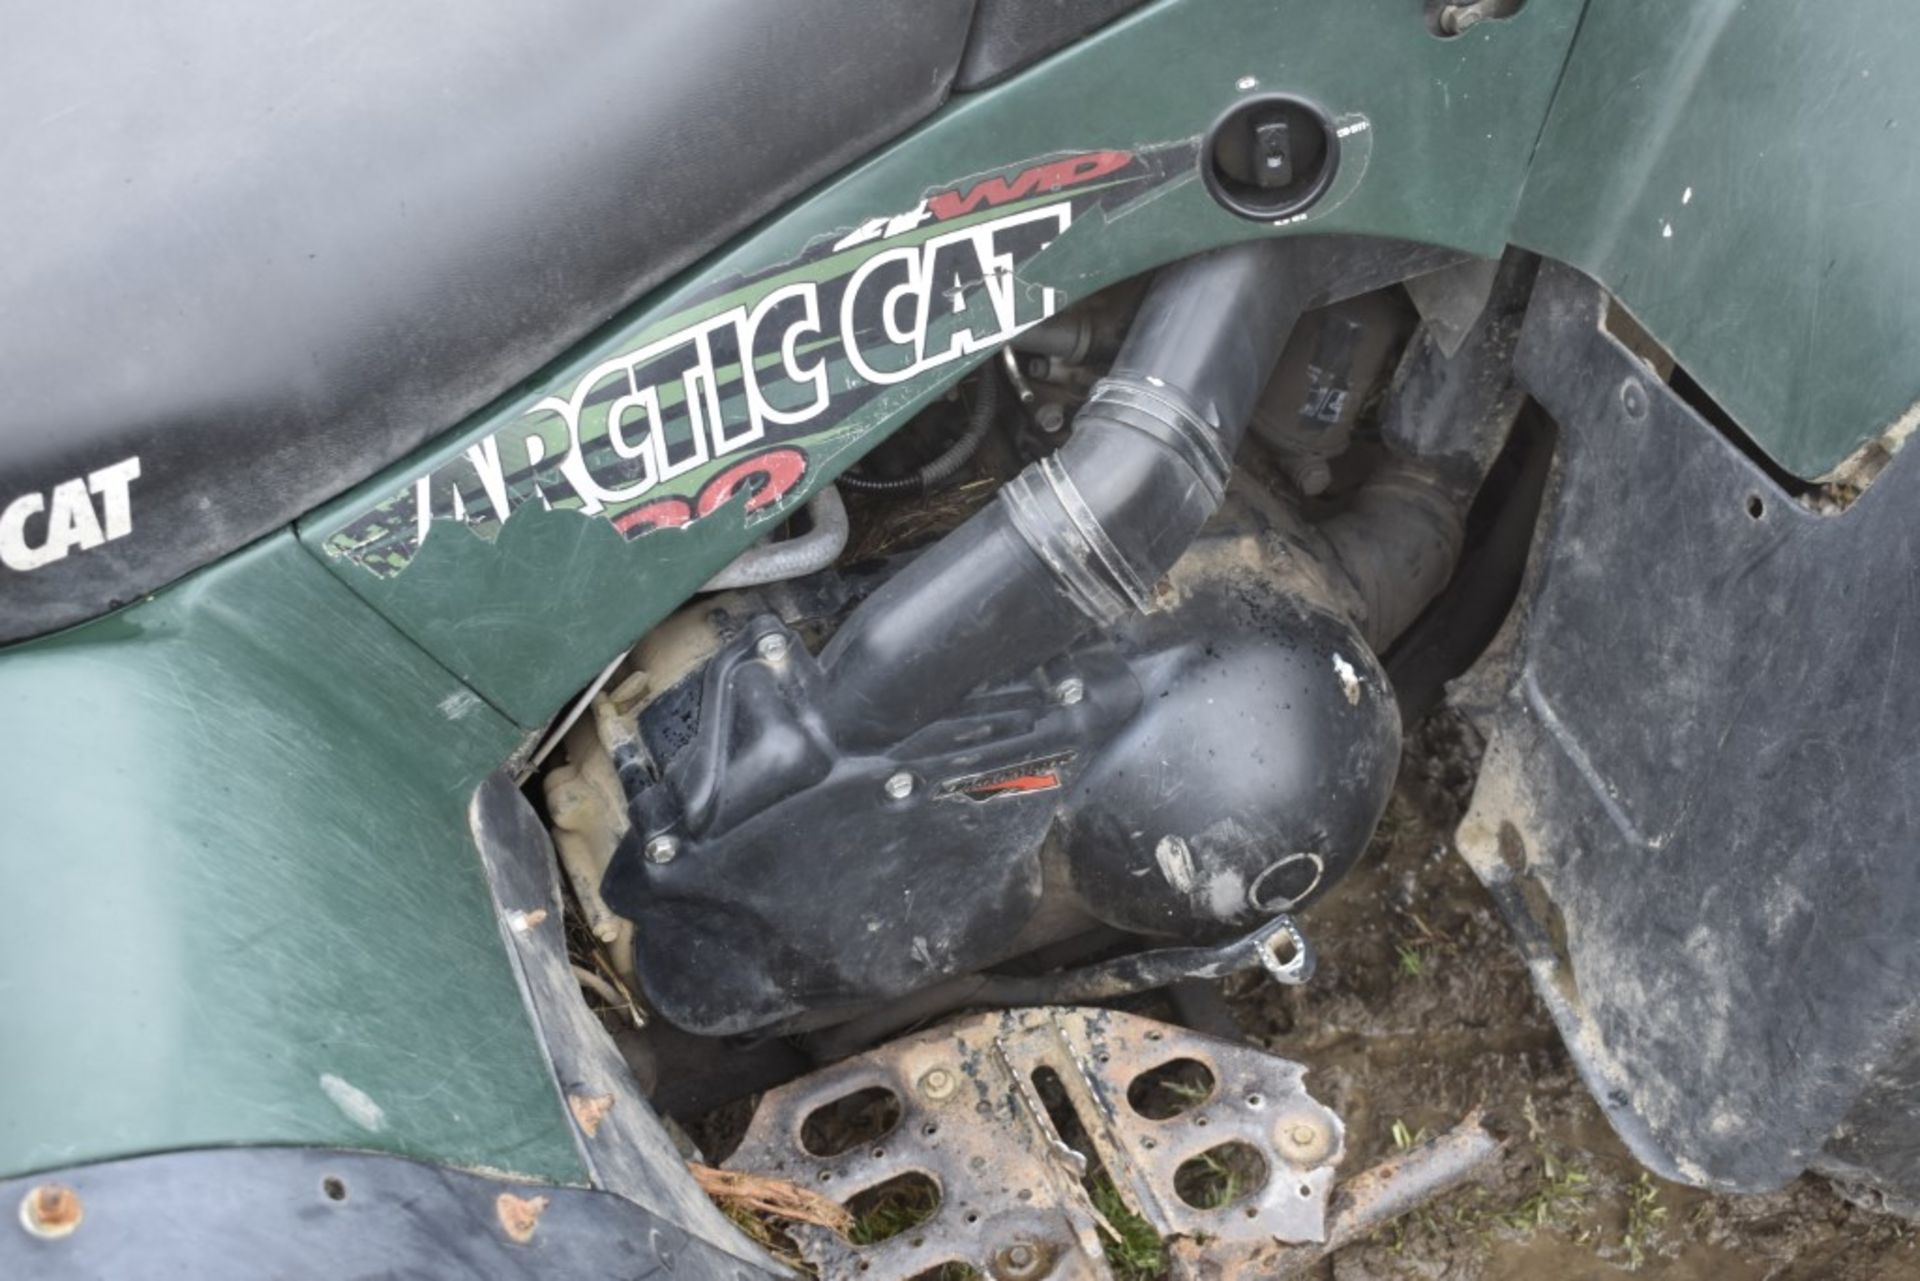 Artic Cat 500 ATV - Image 11 of 22